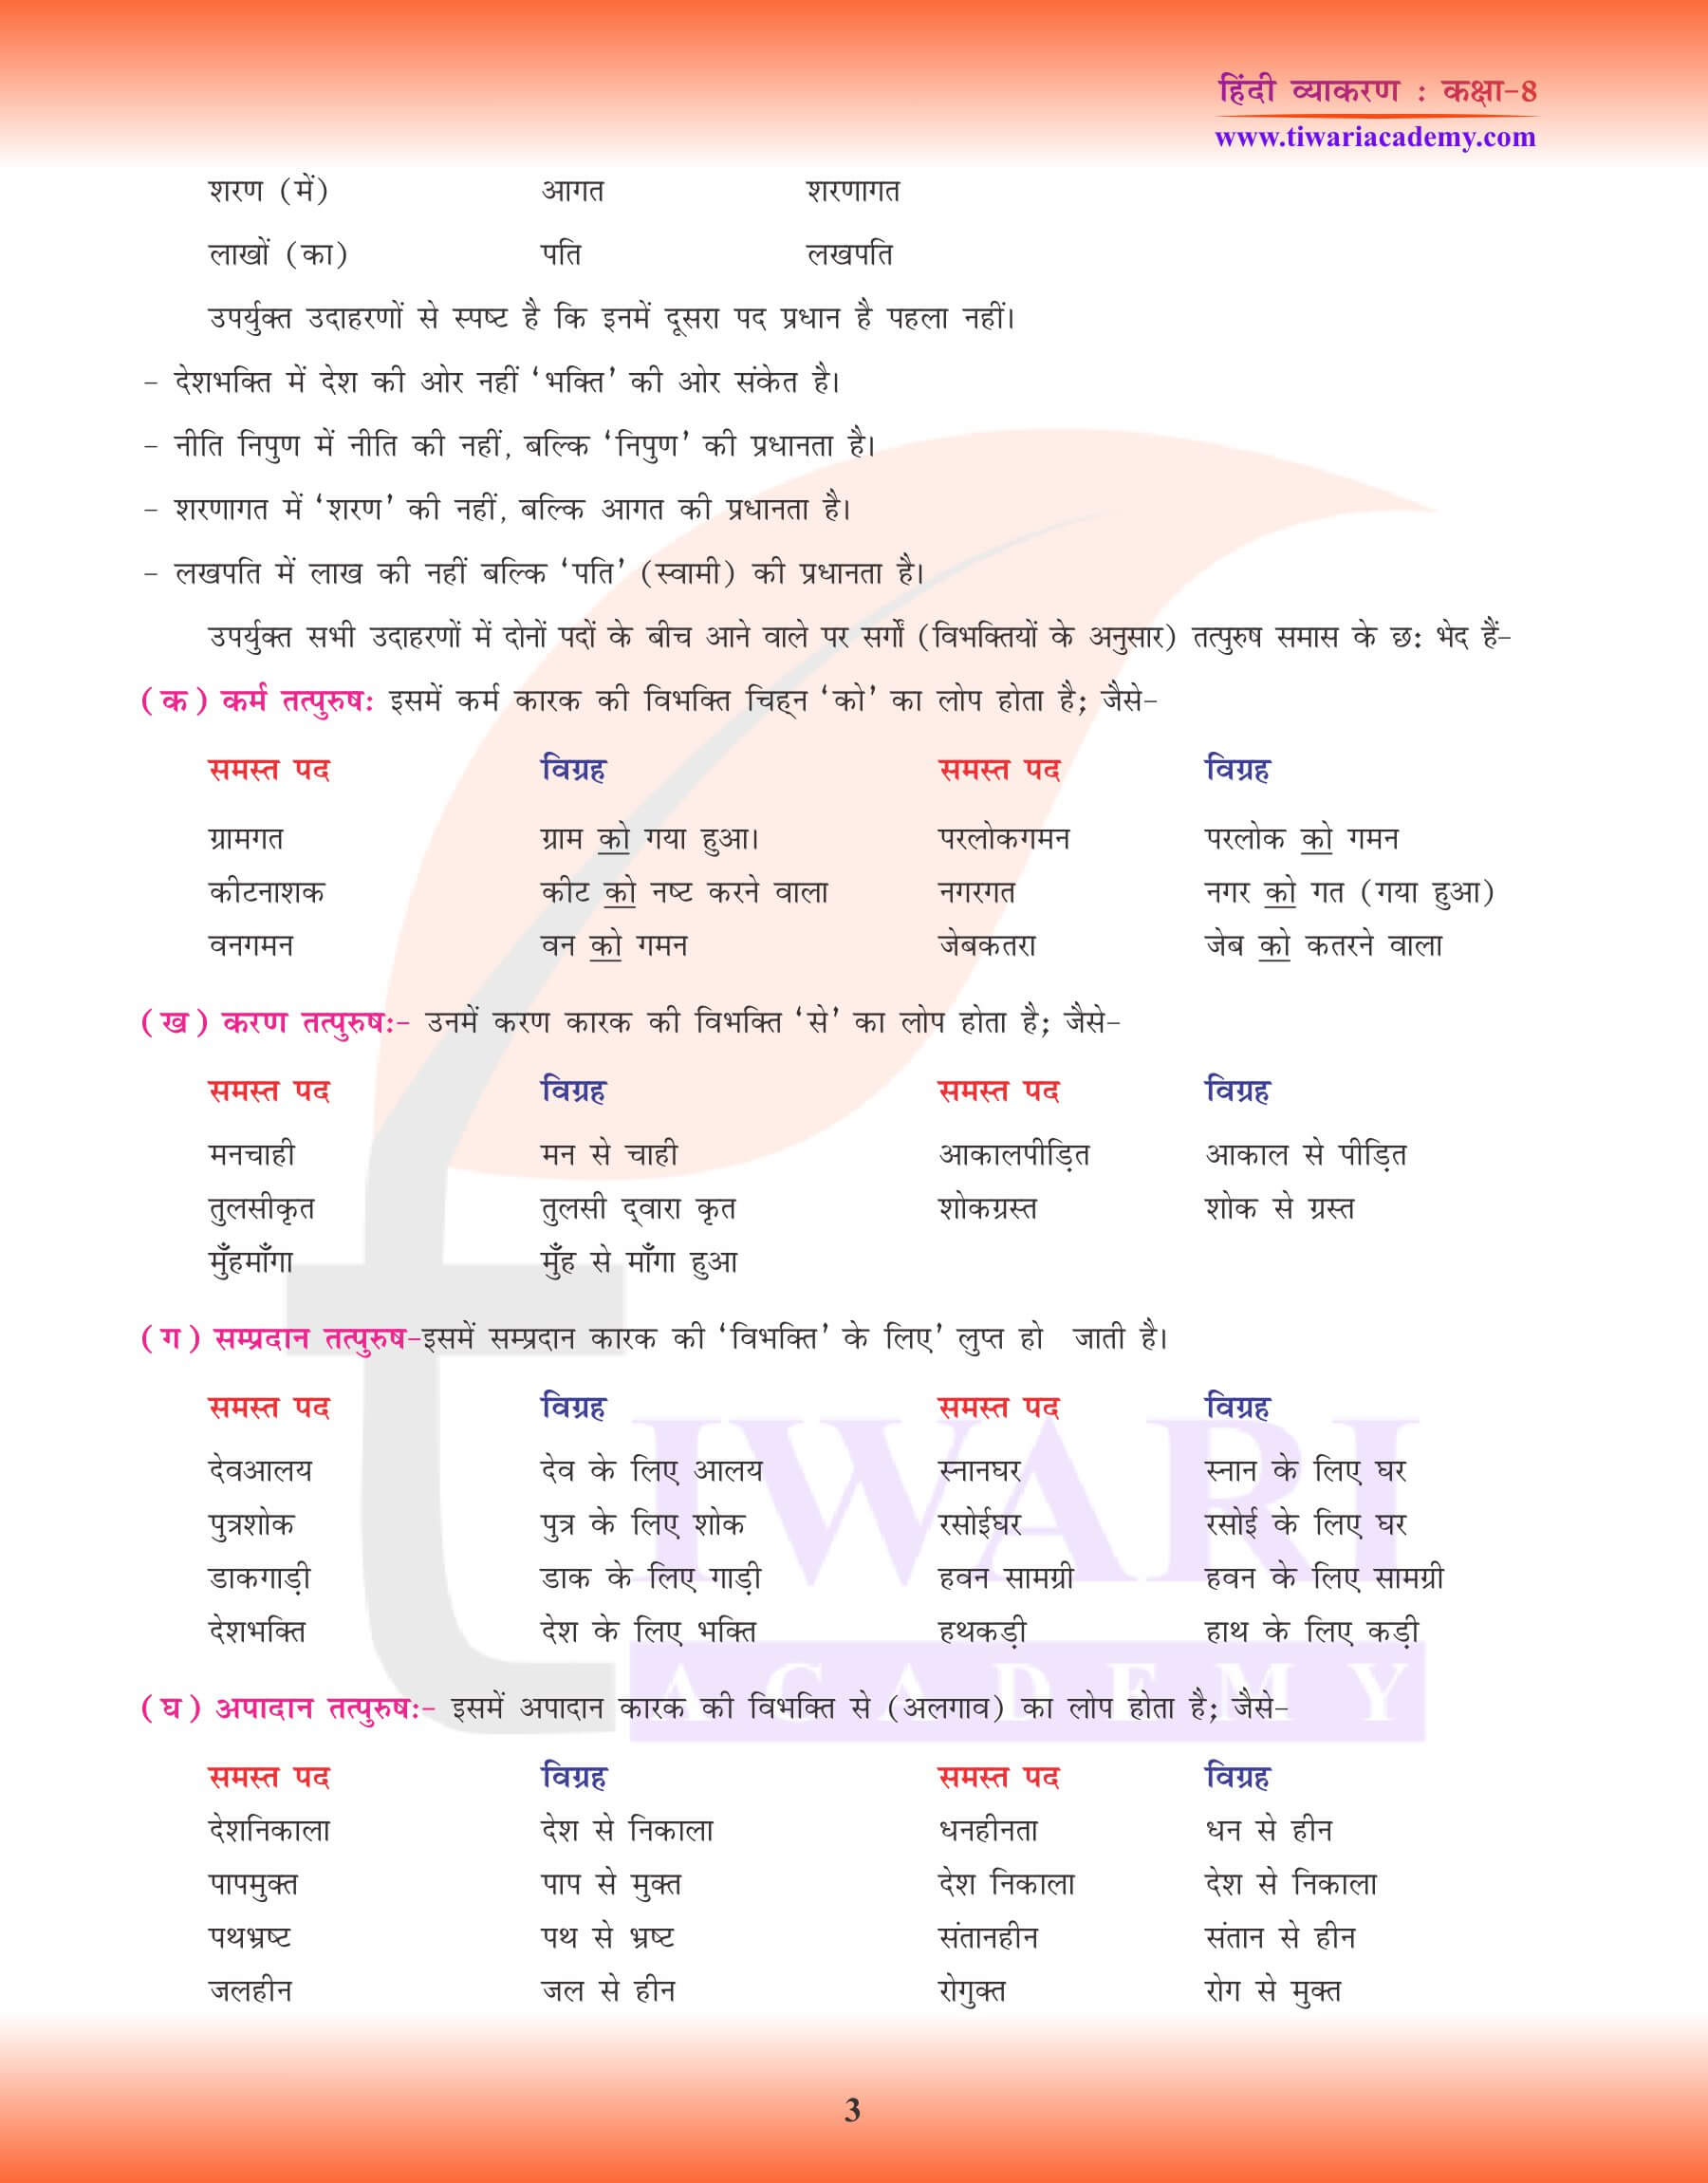 कक्षा 8 हिंदी व्याकरण समास के लिए अभ्यास प्रश्न